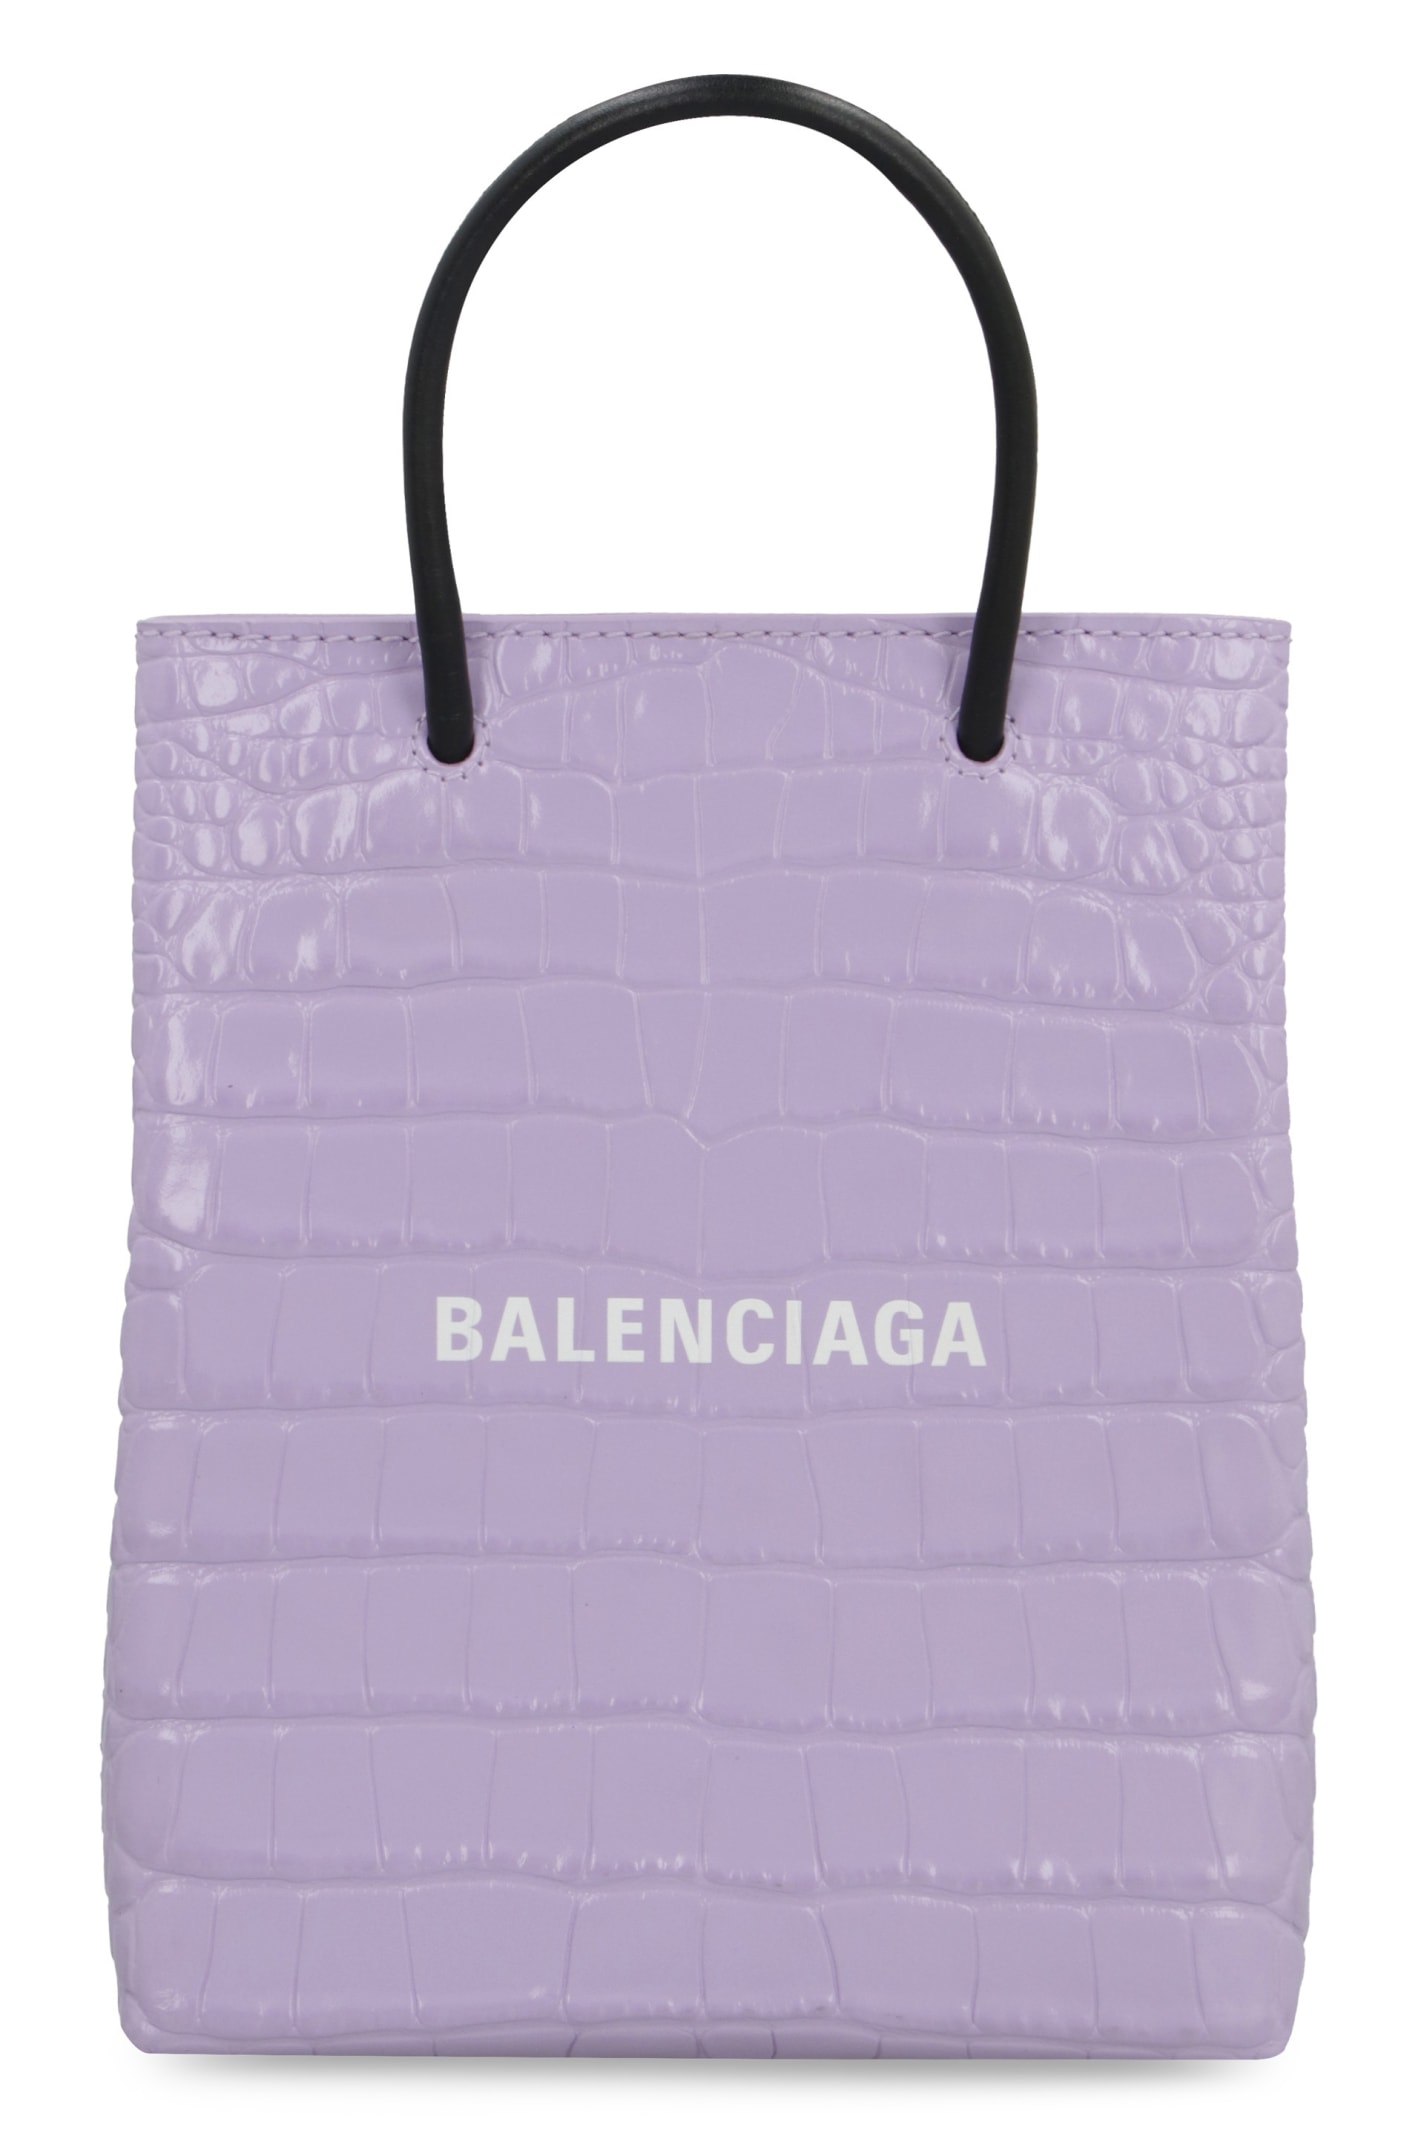 BALENCIAGA CROCO-PRINT LEATHER BAG